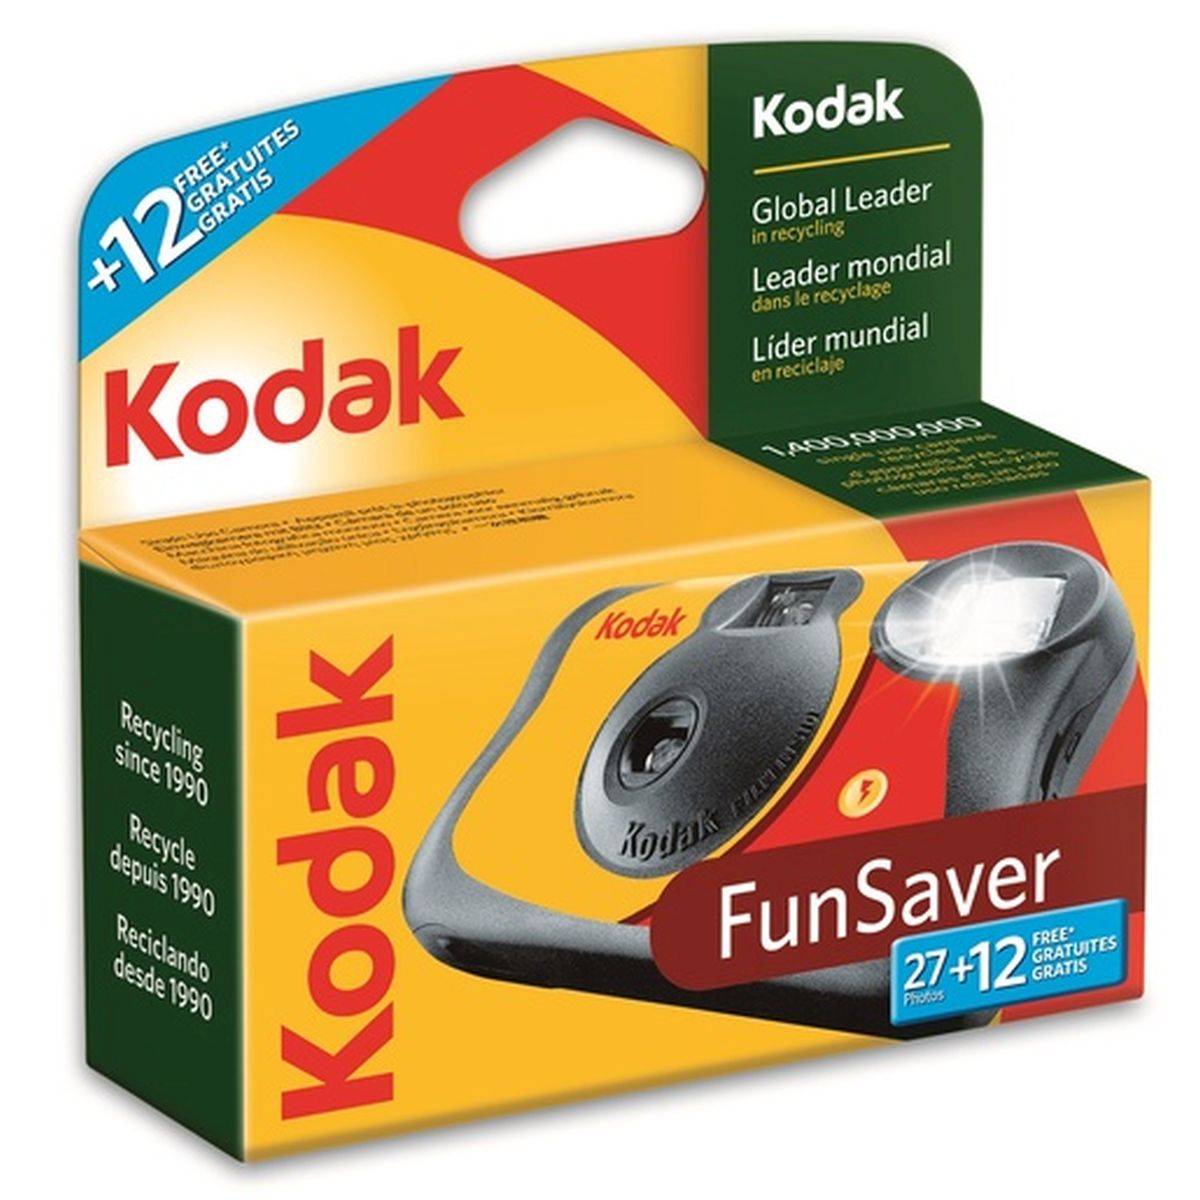 Kodak Fun Saver 27+12 ISO 800 Einwegkamera mit Blitz